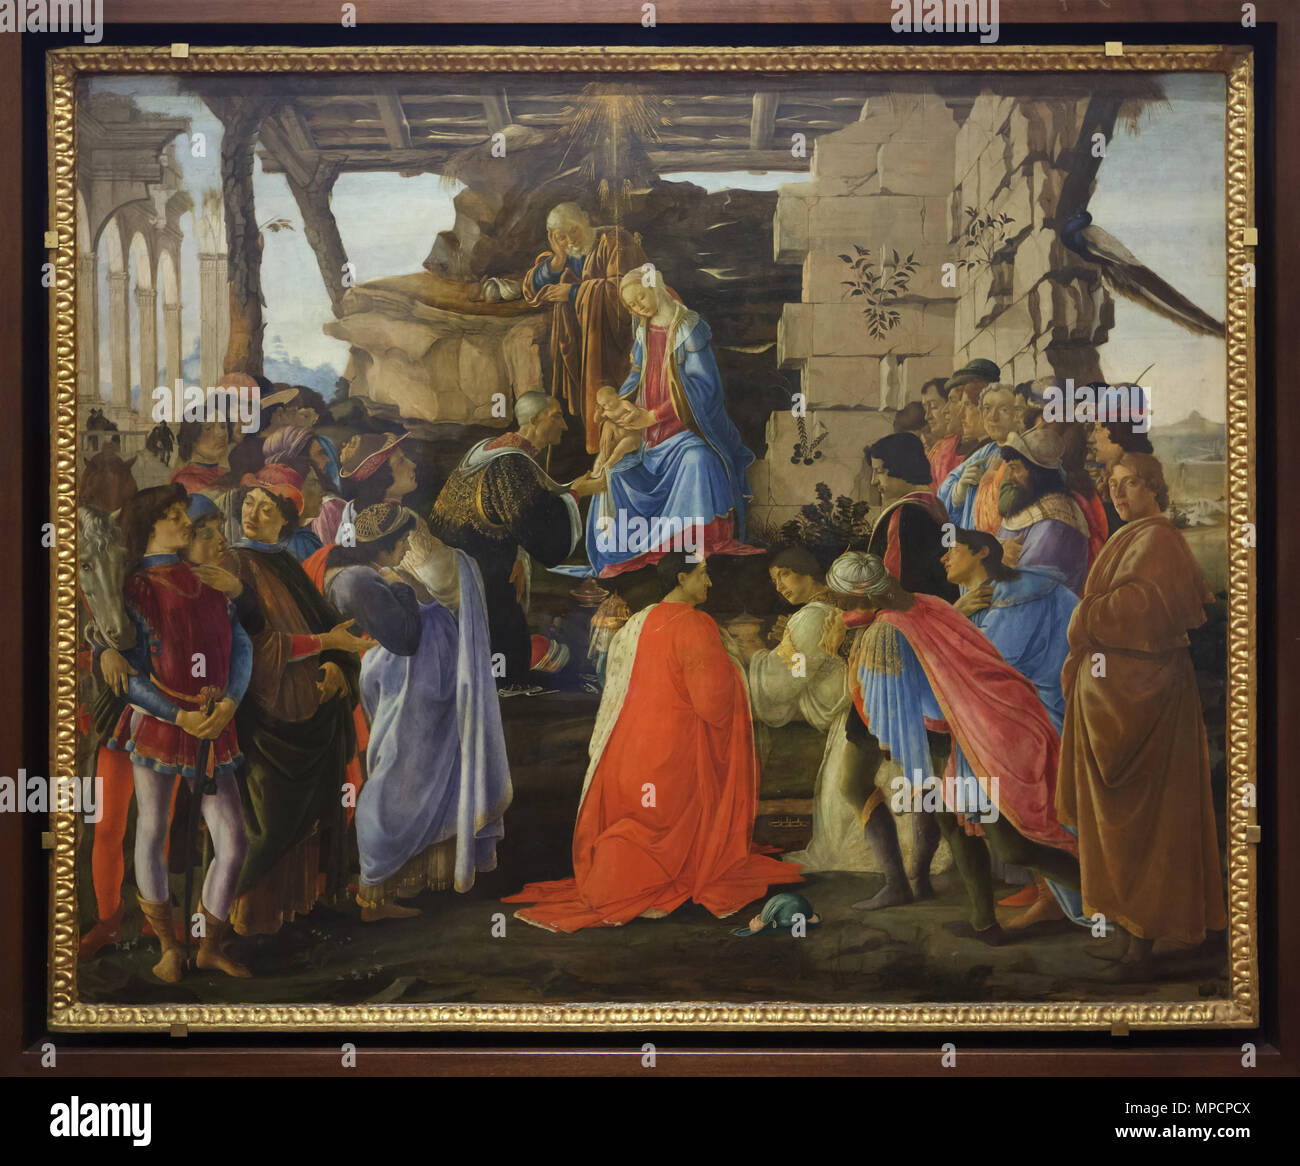 Gemälde "Anbetung der Könige" durch die italienische Renaissance Maler Sandro Botticelli aus der Zeit um 1475 datiert, die in den Uffizien (Galleria degli Uffizi) in Florenz, Toskana, Italien. Stockfoto